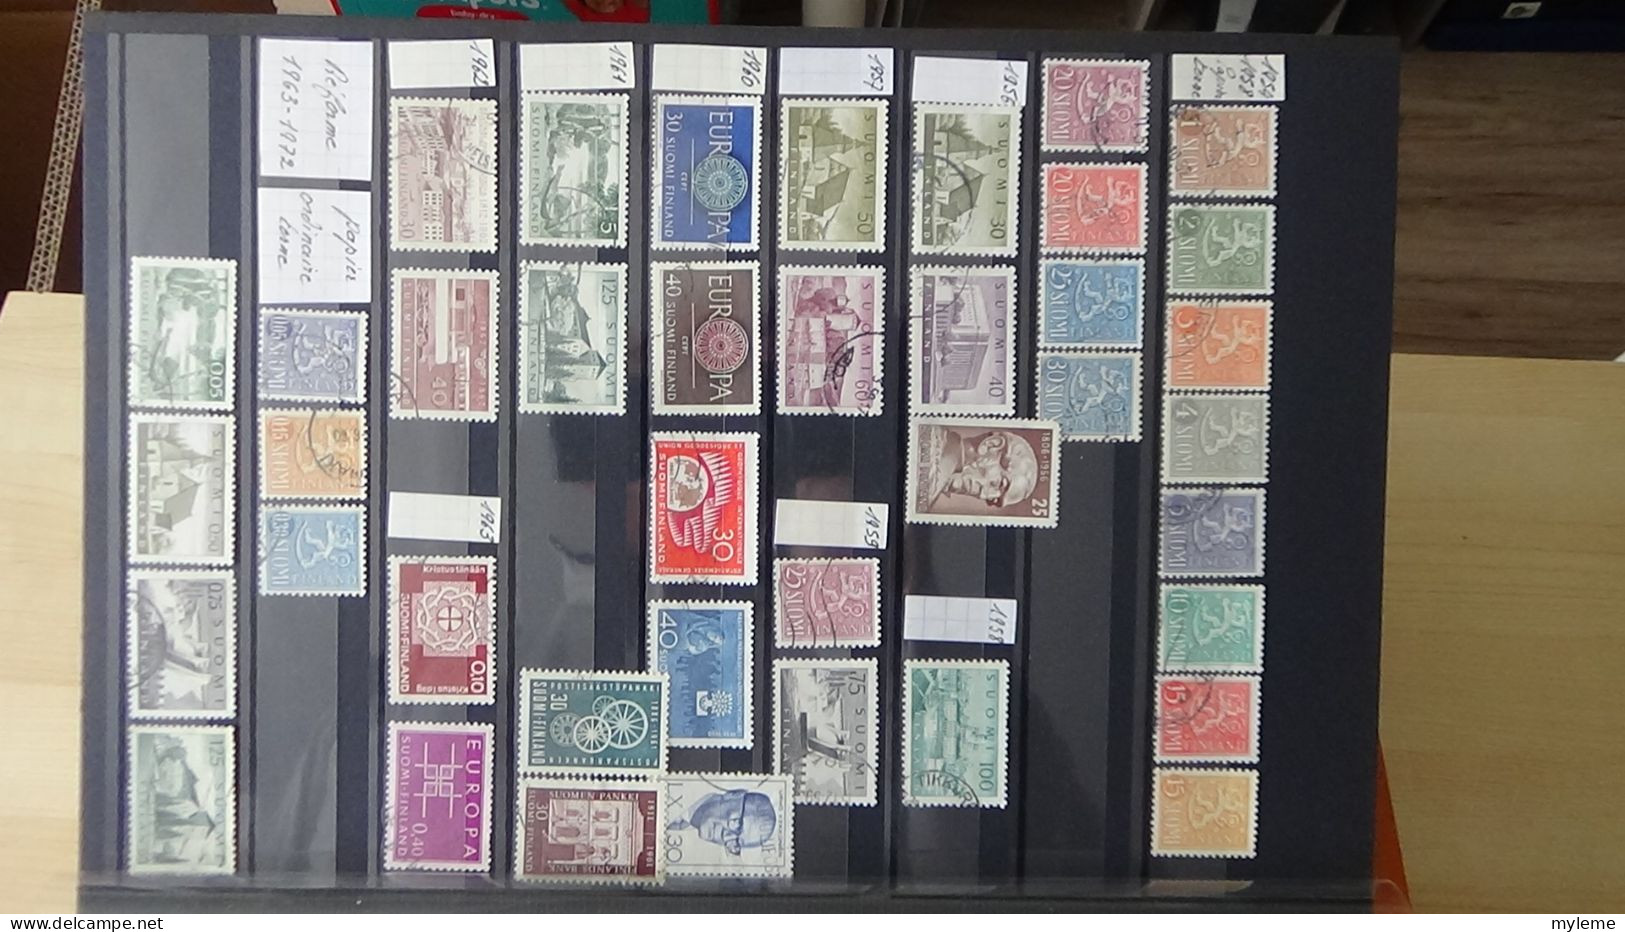 BF43 Bel ensemble de timbres de divers pays dont bloc N° 3 ** signé (1 adhérence en haut) voir scan. Cote 800 euros